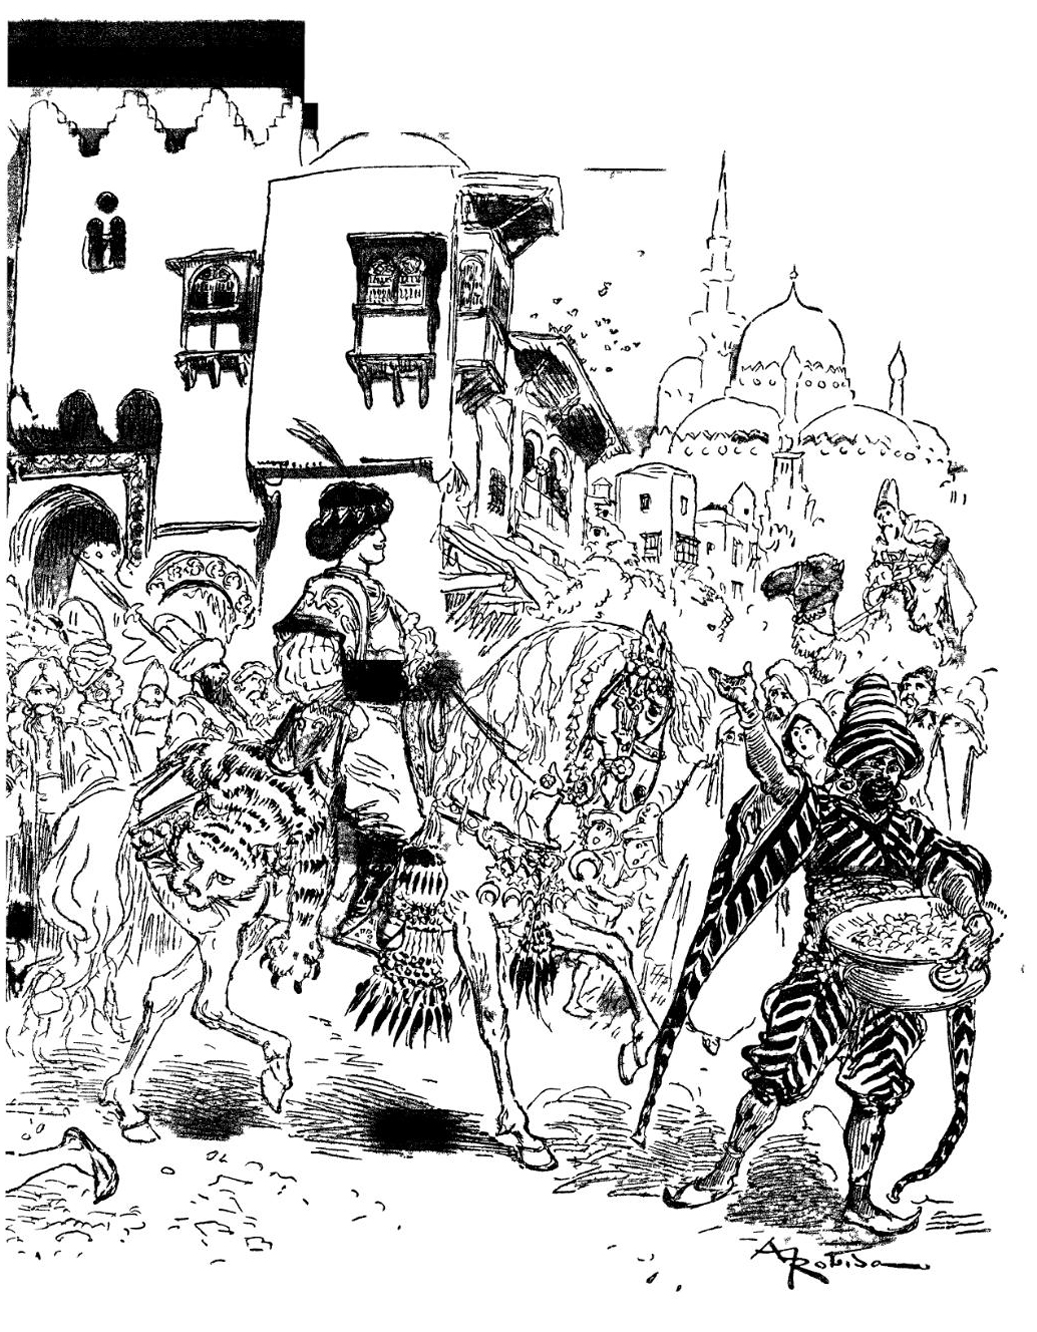 La llegada del príncipe Aladino a la ciudad de Agrabah